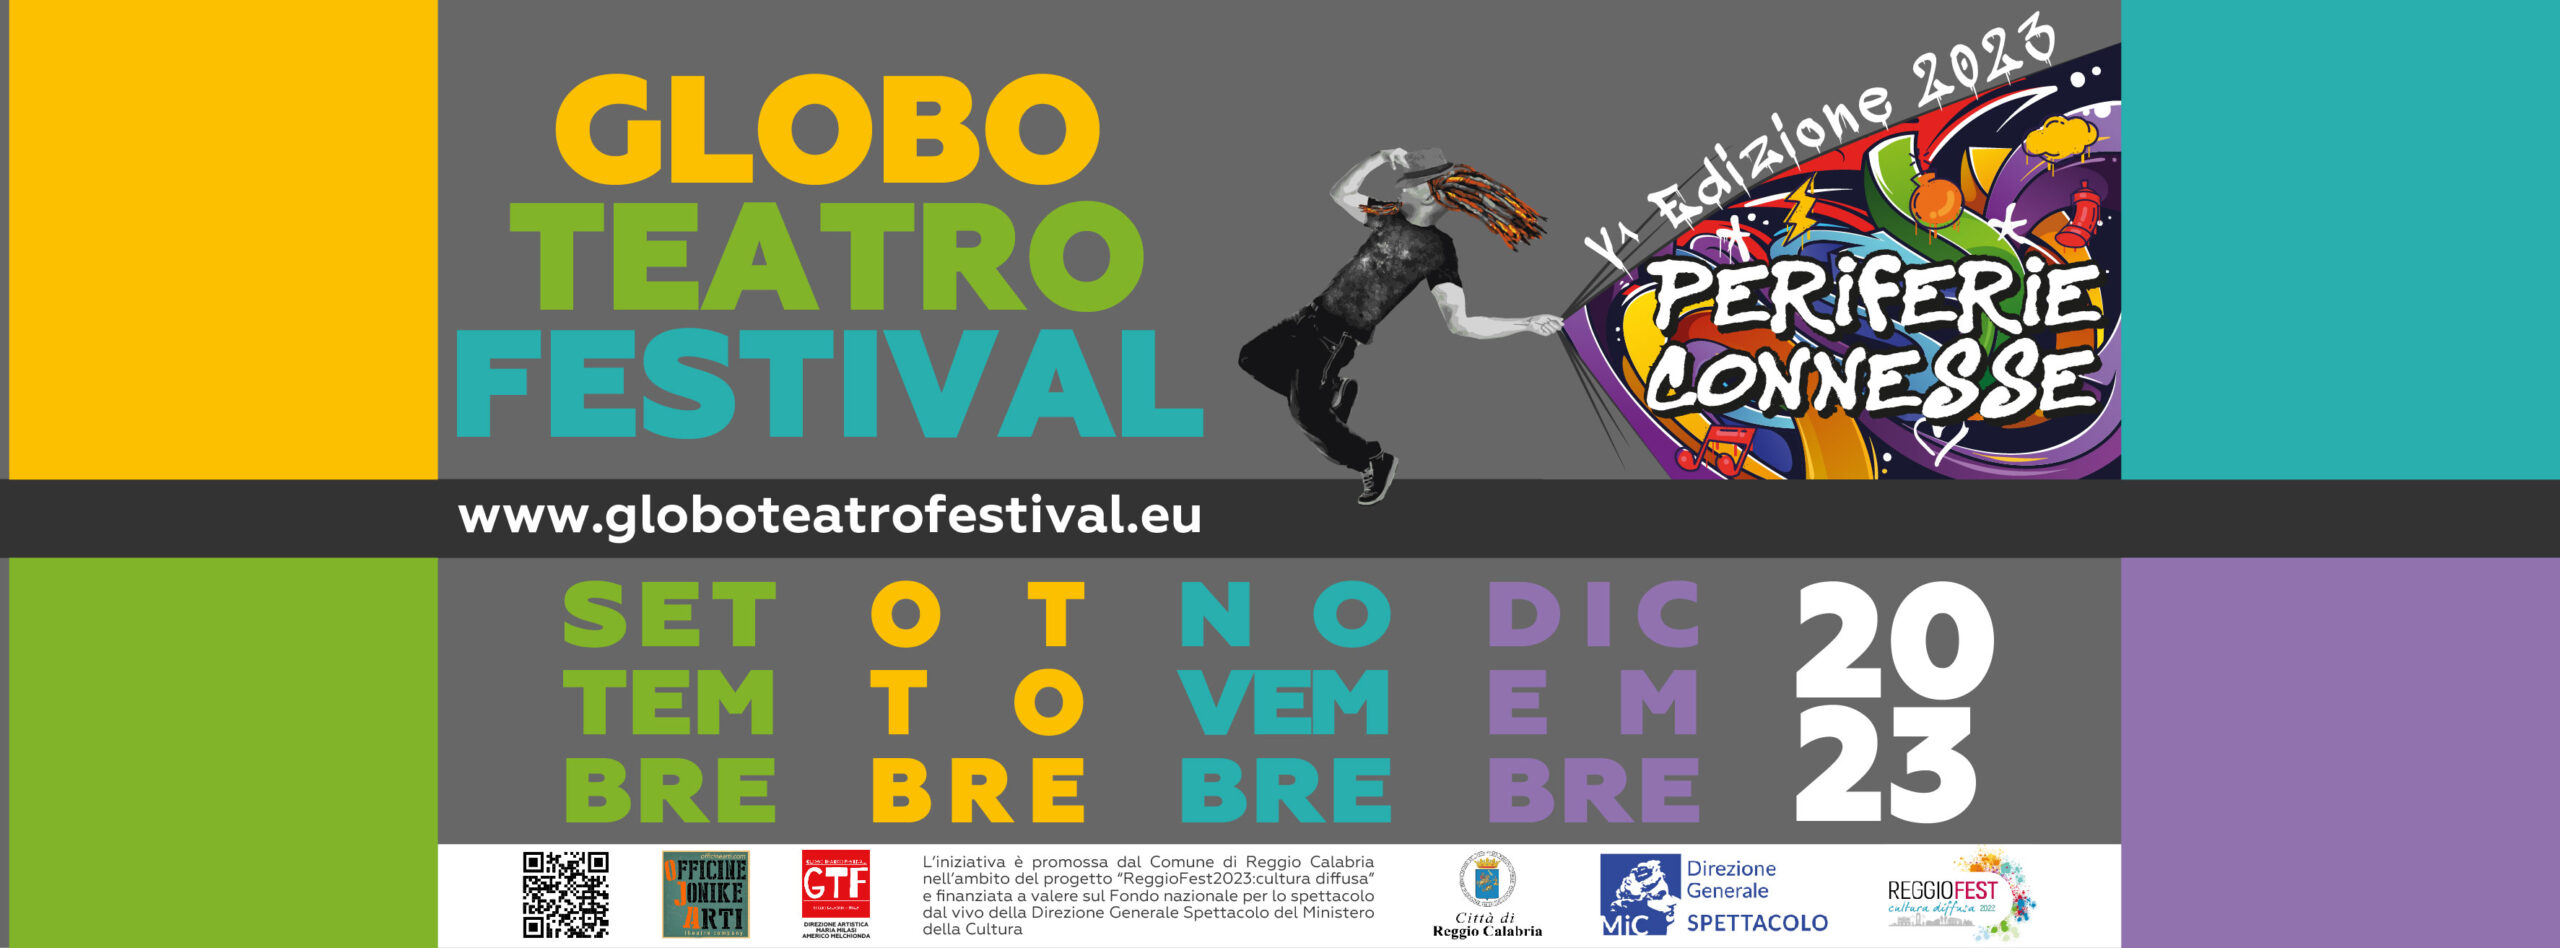 Globo Teatro Festival